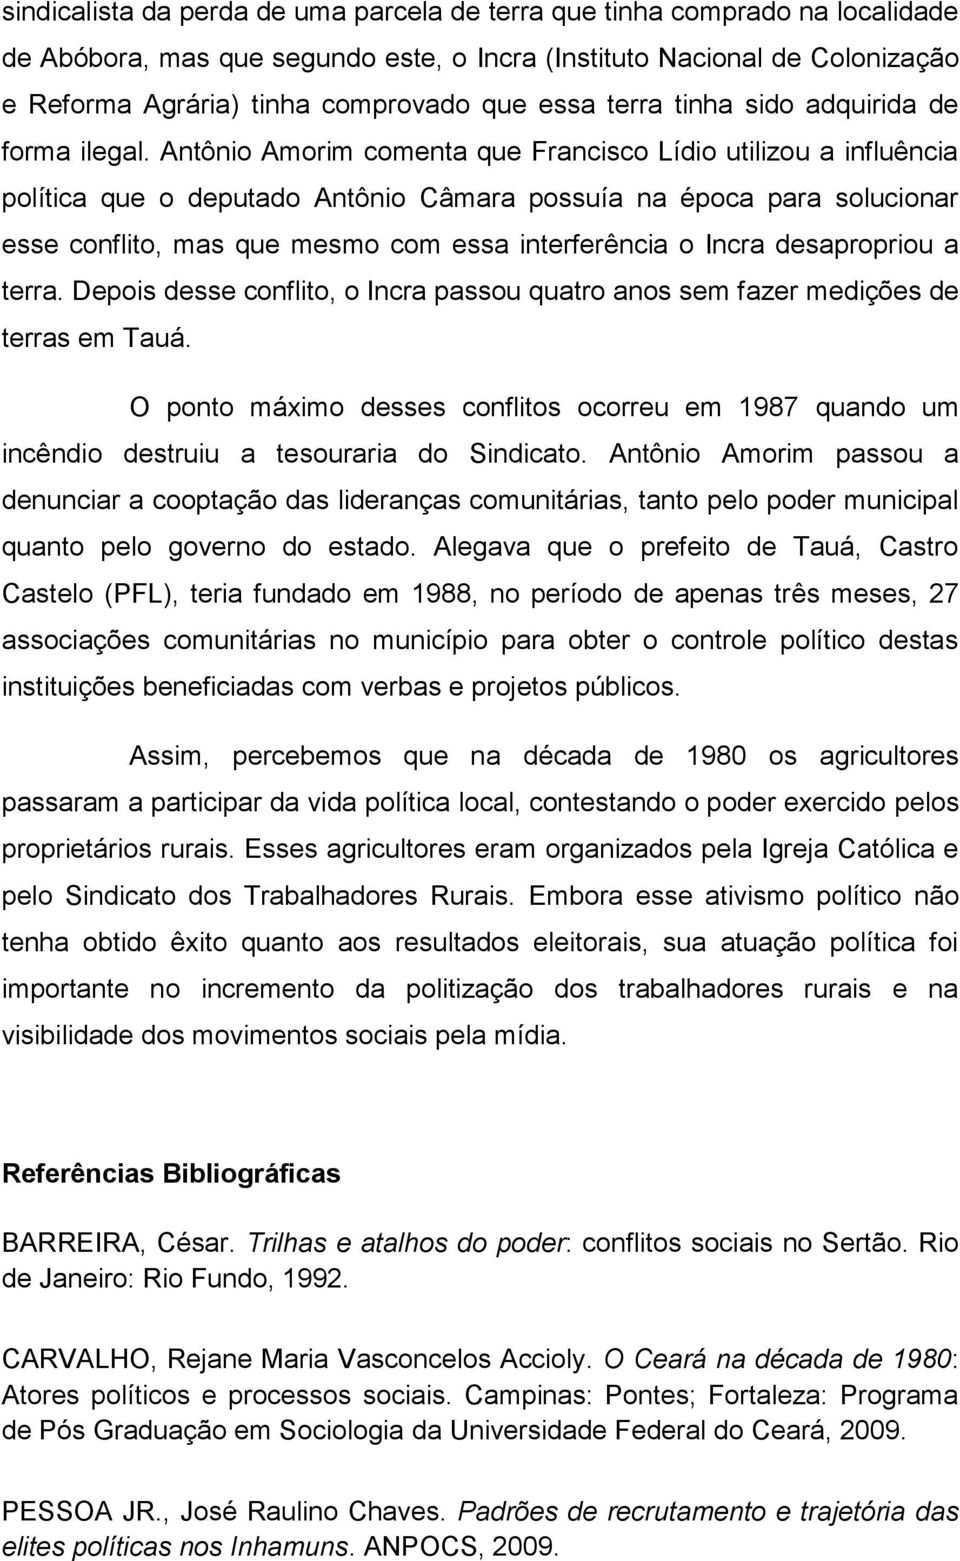 Antônio Amorim comenta que Francisco Lídio utilizou a influência política que o deputado Antônio Câmara possuía na época para solucionar esse conflito, mas que mesmo com essa interferência o Incra